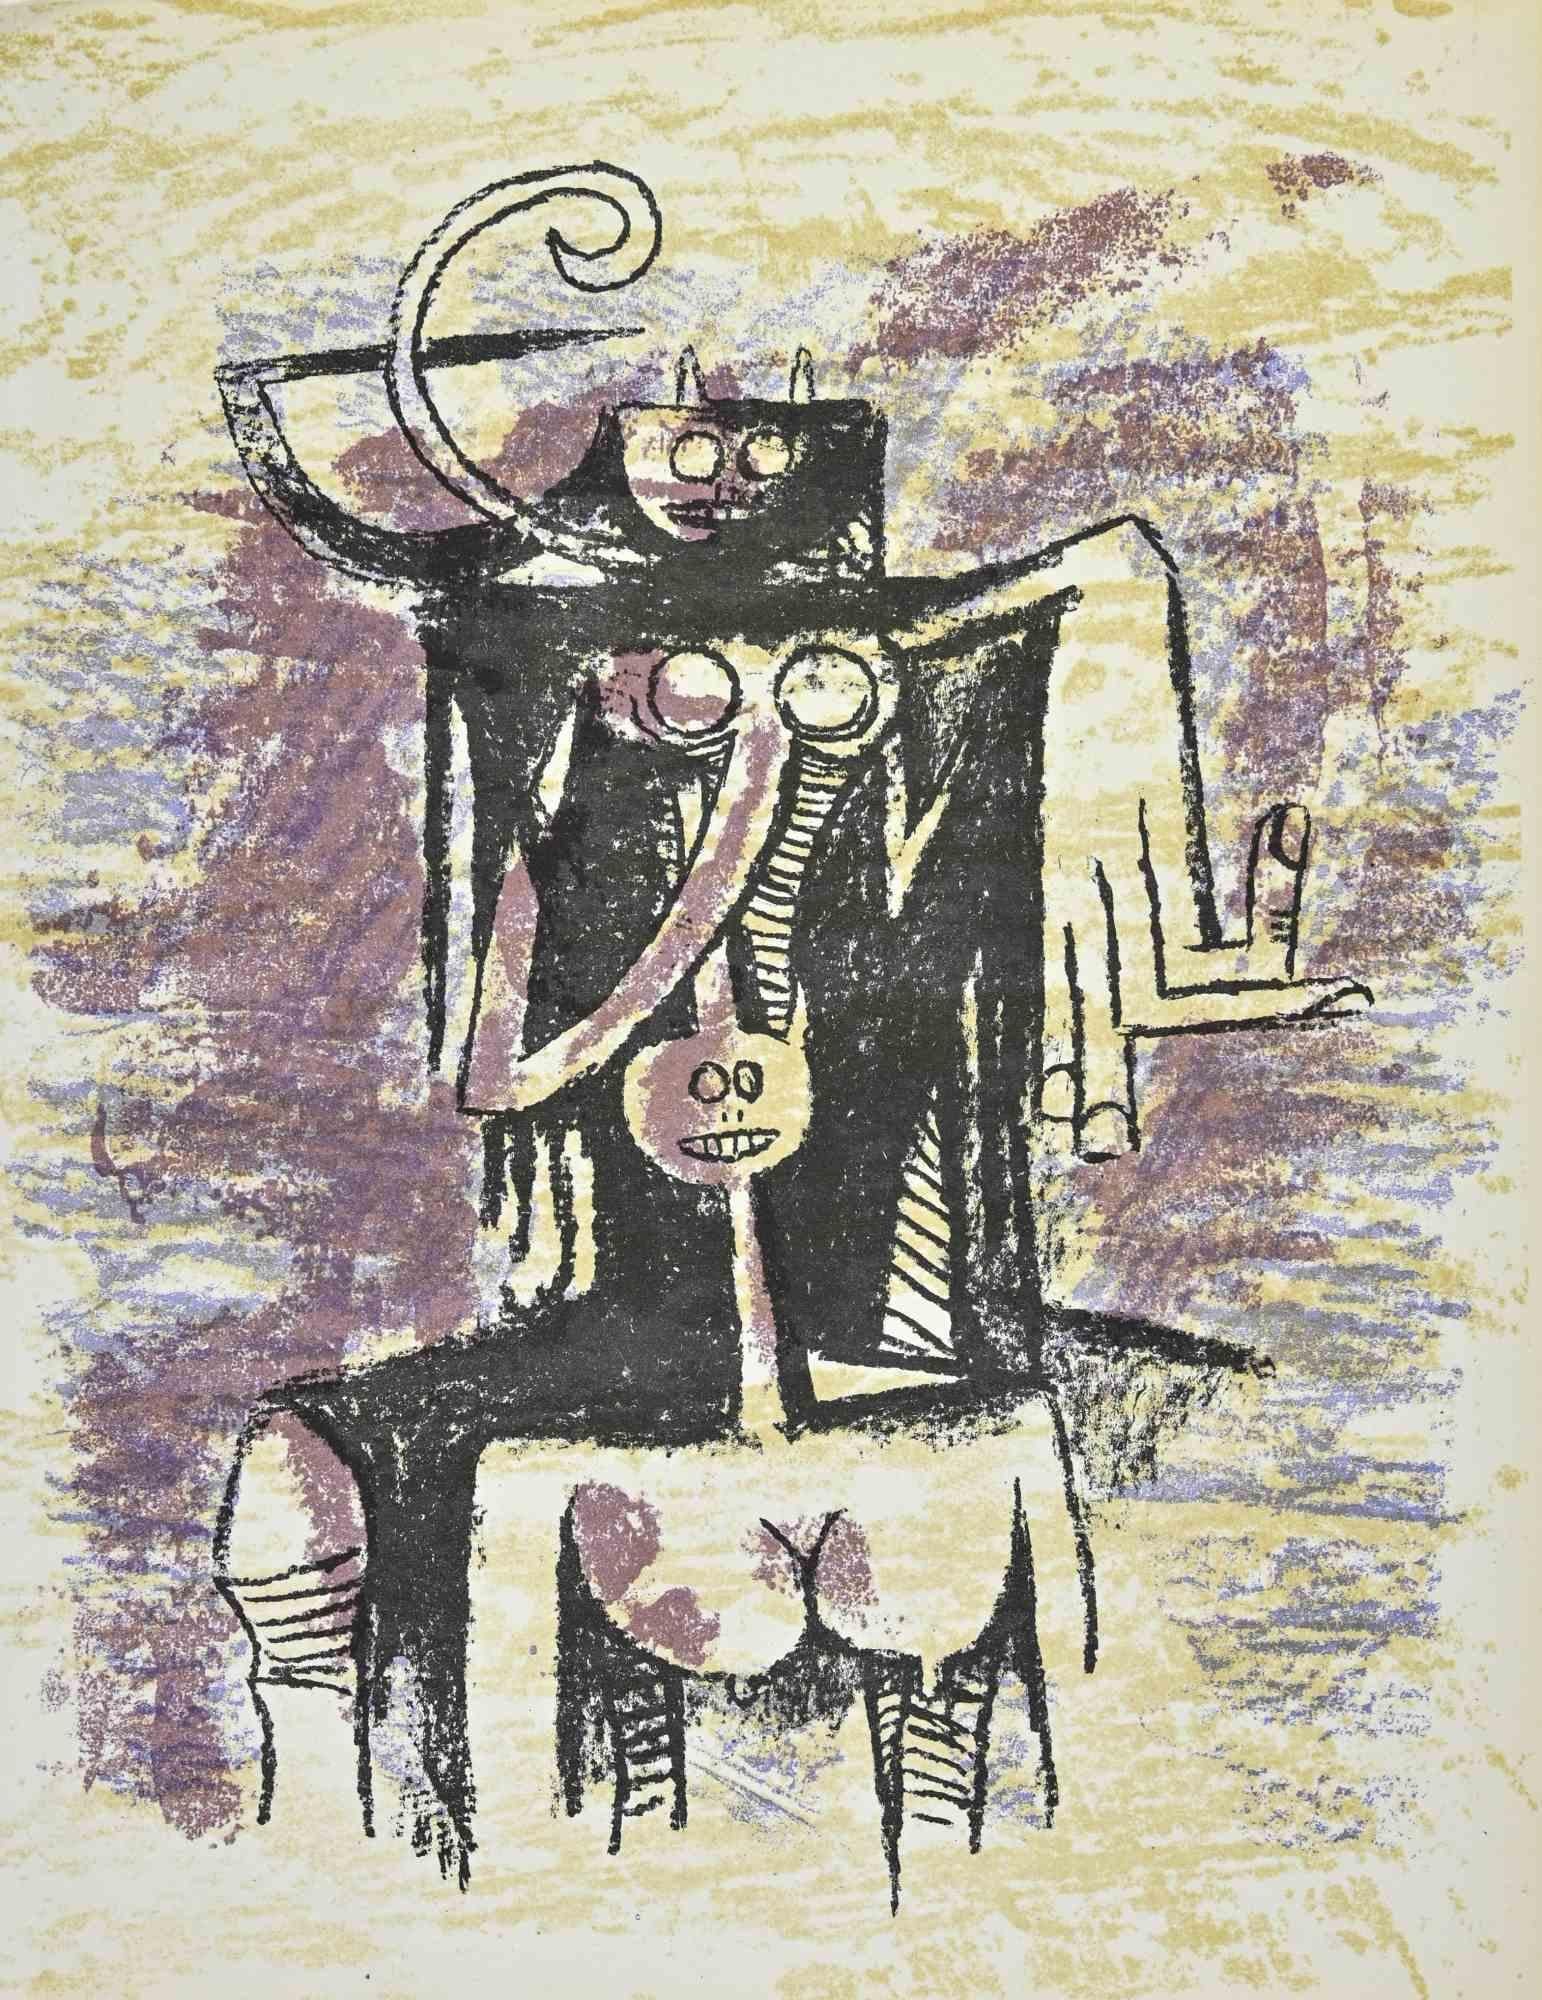 Sans titre est une lithographie réalisée par l'artiste surréaliste cubain Wifredo Lam (1902-1982).

Il s'agit d'une lithographie en couleurs sur papier vélin, éditée par la revue française XXe Siécle , et publiée sur le Panorama 74 - Le Surréalisme